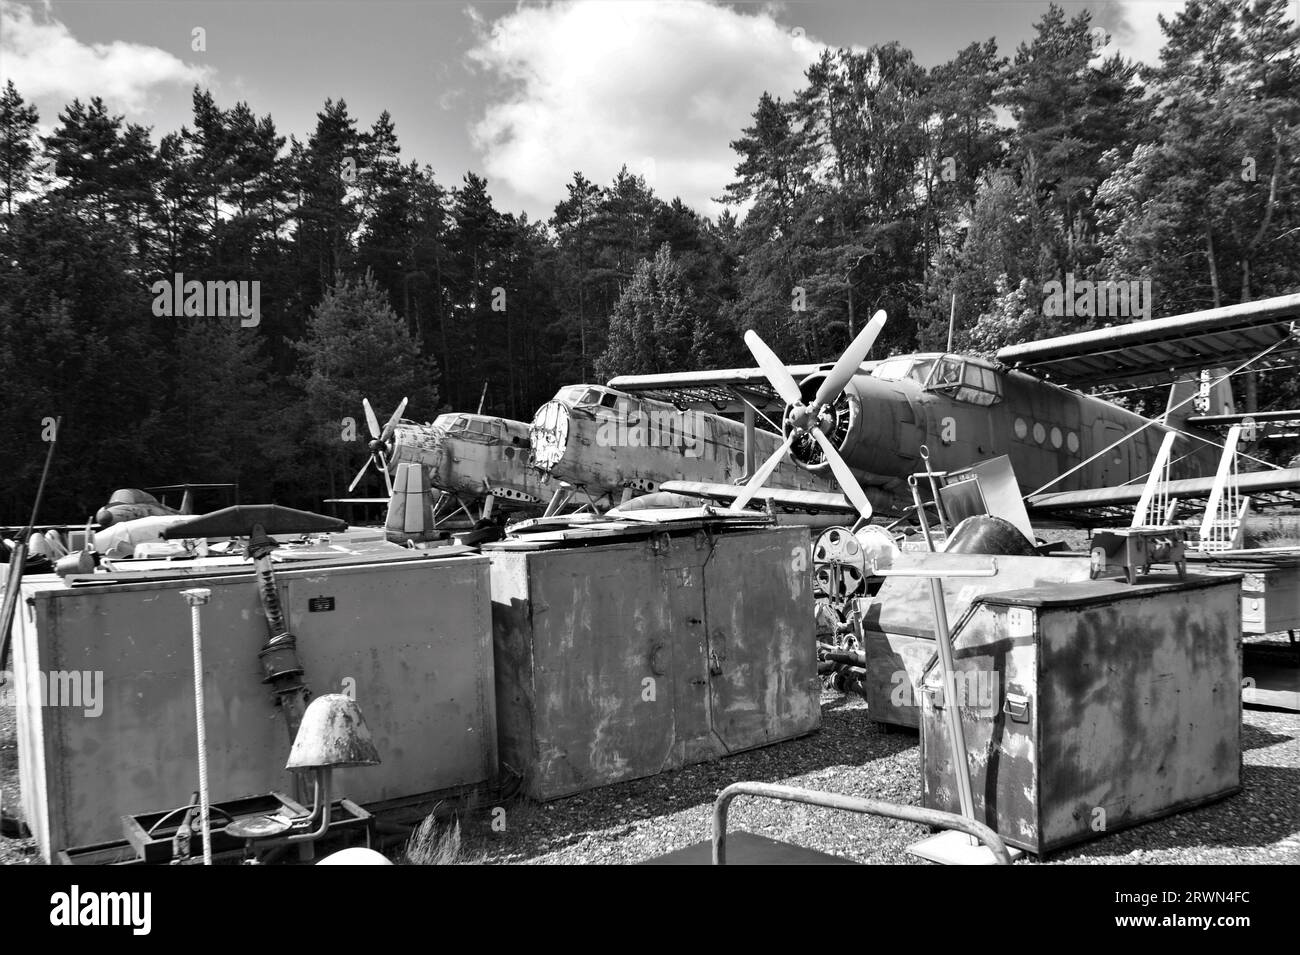 Vieux avions au musée de l'aviation. Image en noir et blanc. Banque D'Images